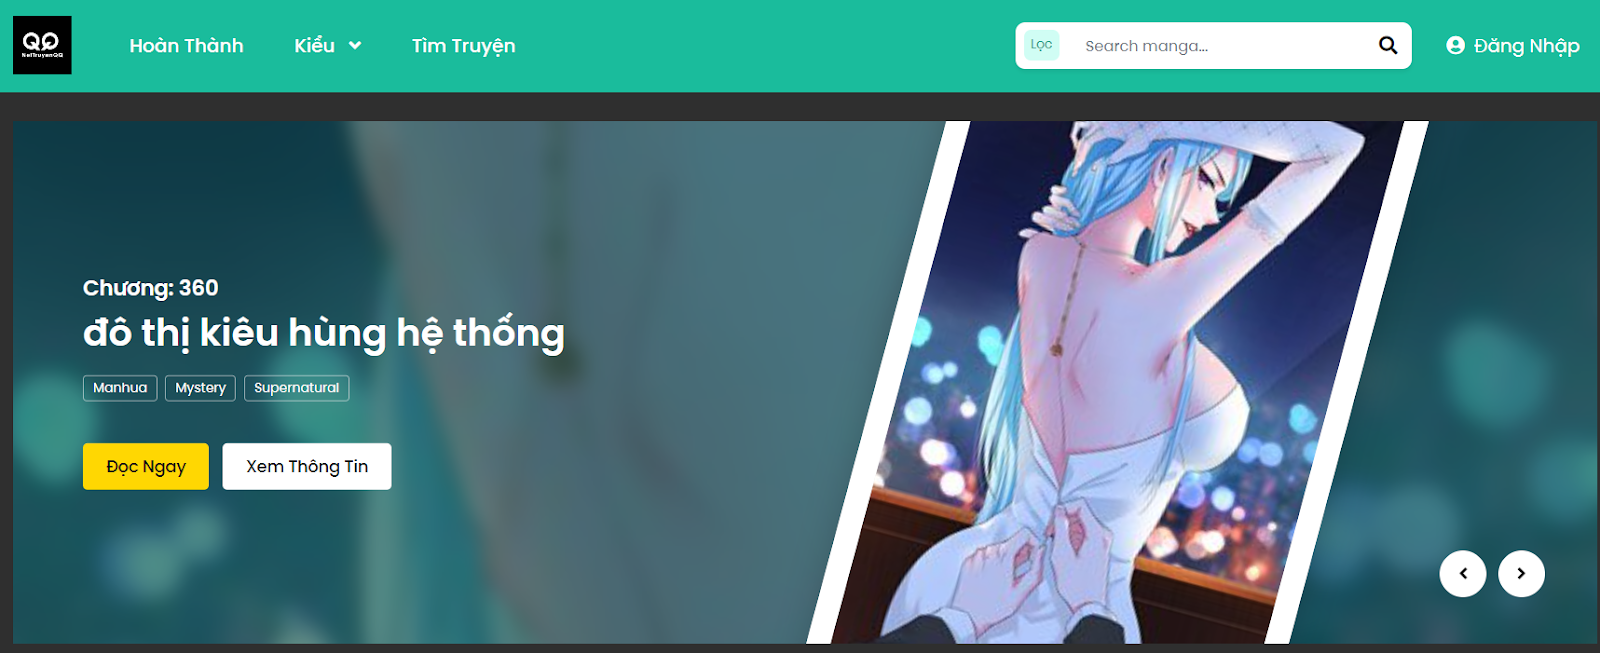 NetTruyen.vn là một trang web đọc truyện tranh trực tuyến phổ biến tại Việt Nam